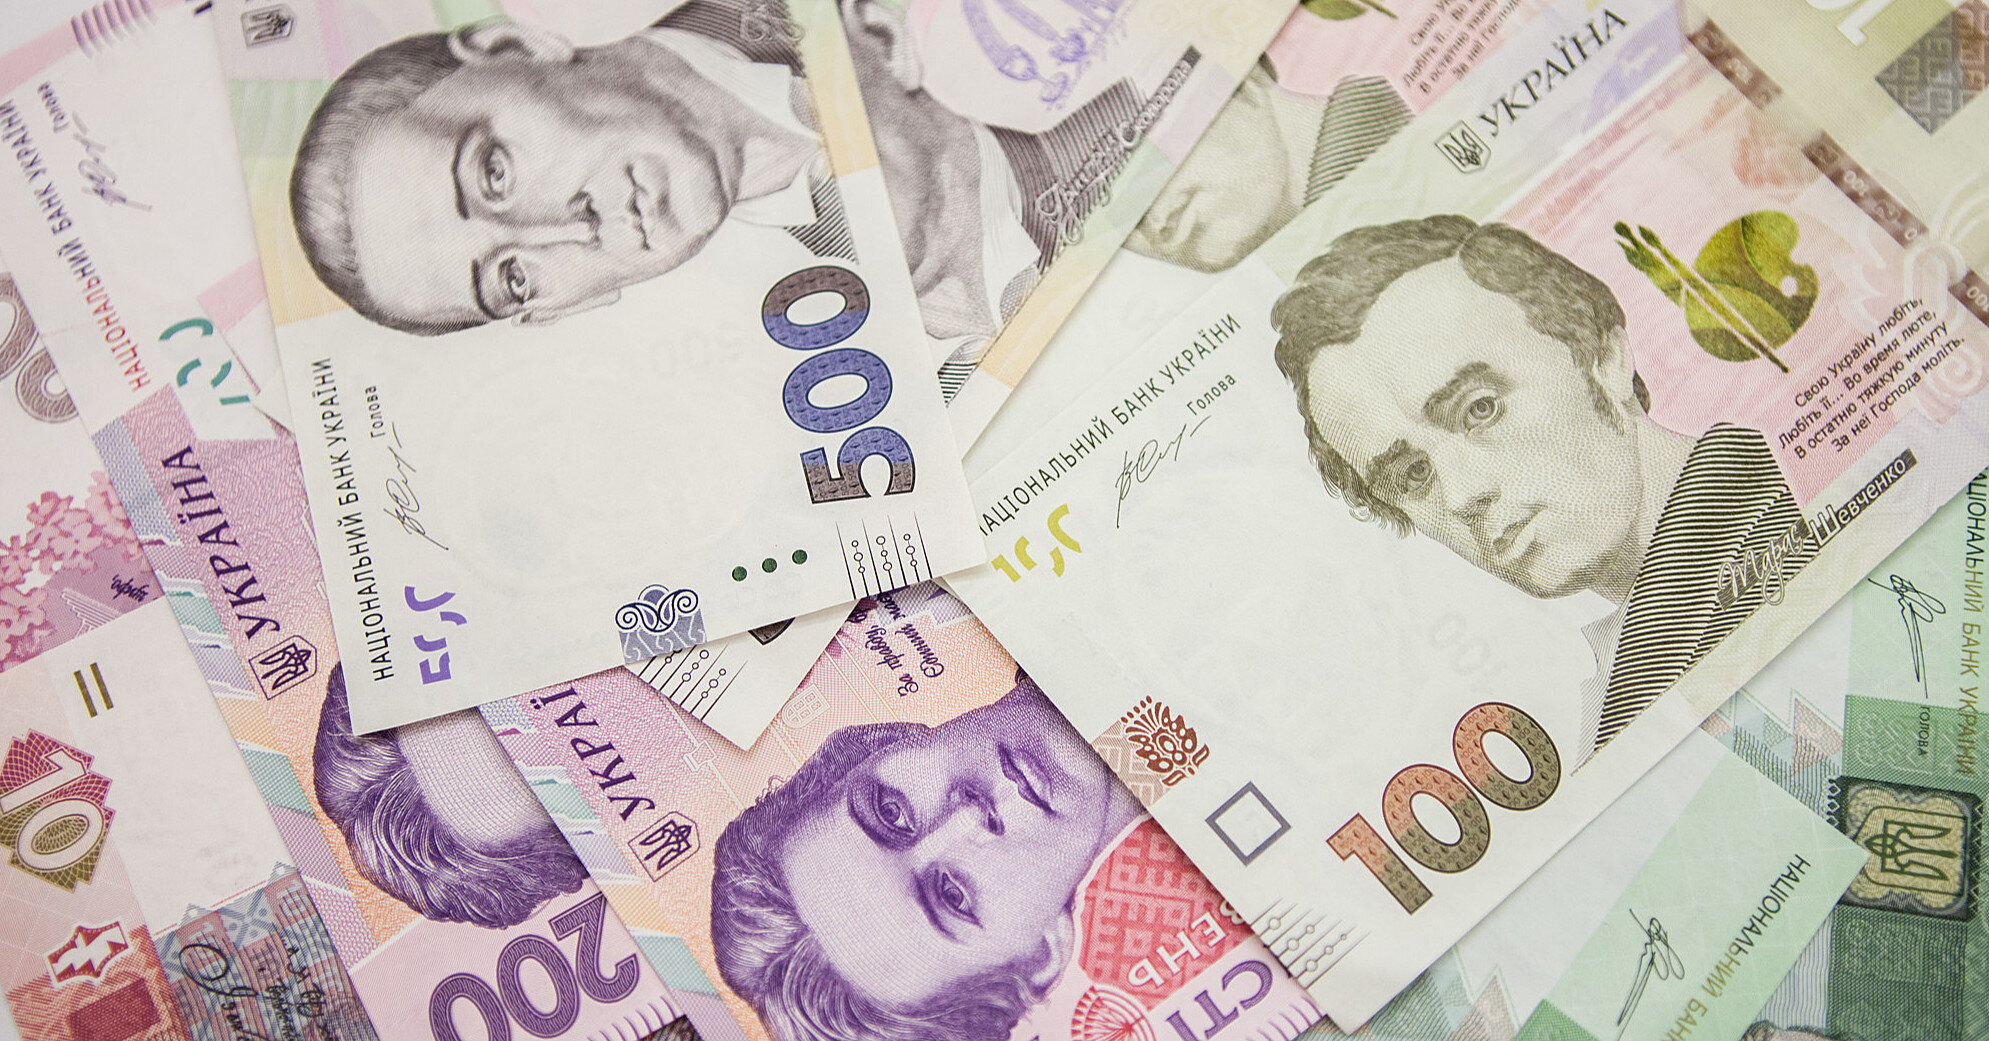 Доходы госбюджета в апреле снизились на 4,5 млрд гривен - Минфин